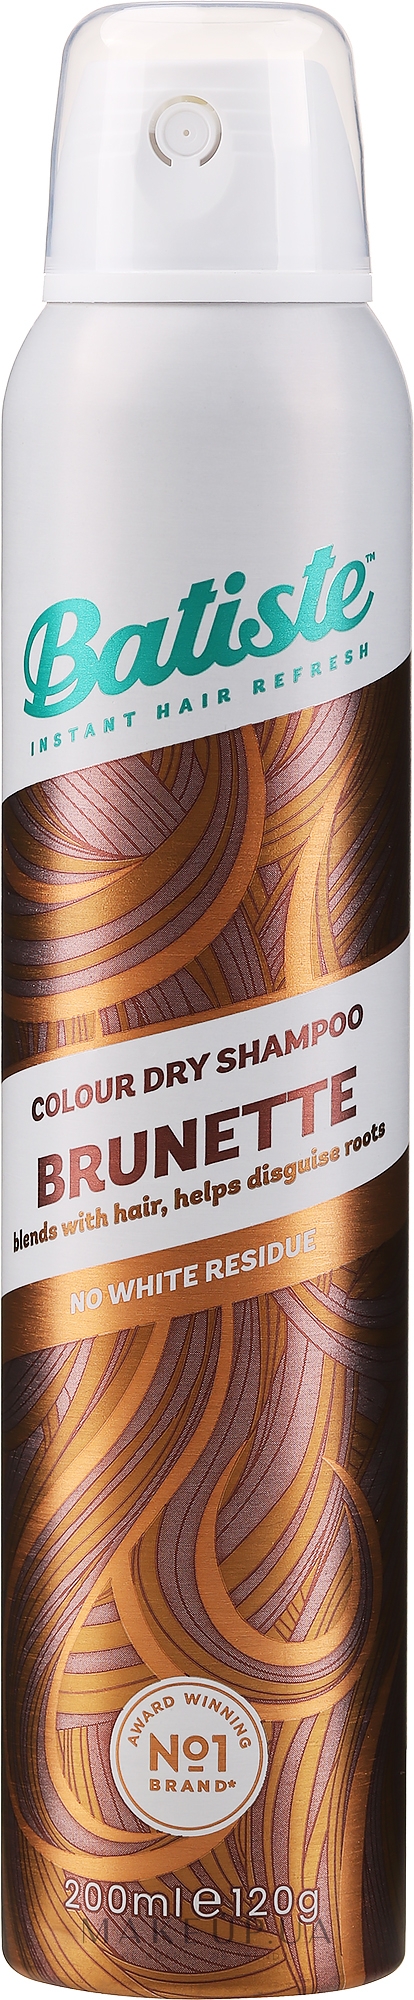 Сухой шампунь - Batiste Dry Shampoo Medium and Brunette a Hint of Colour — фото 200ml